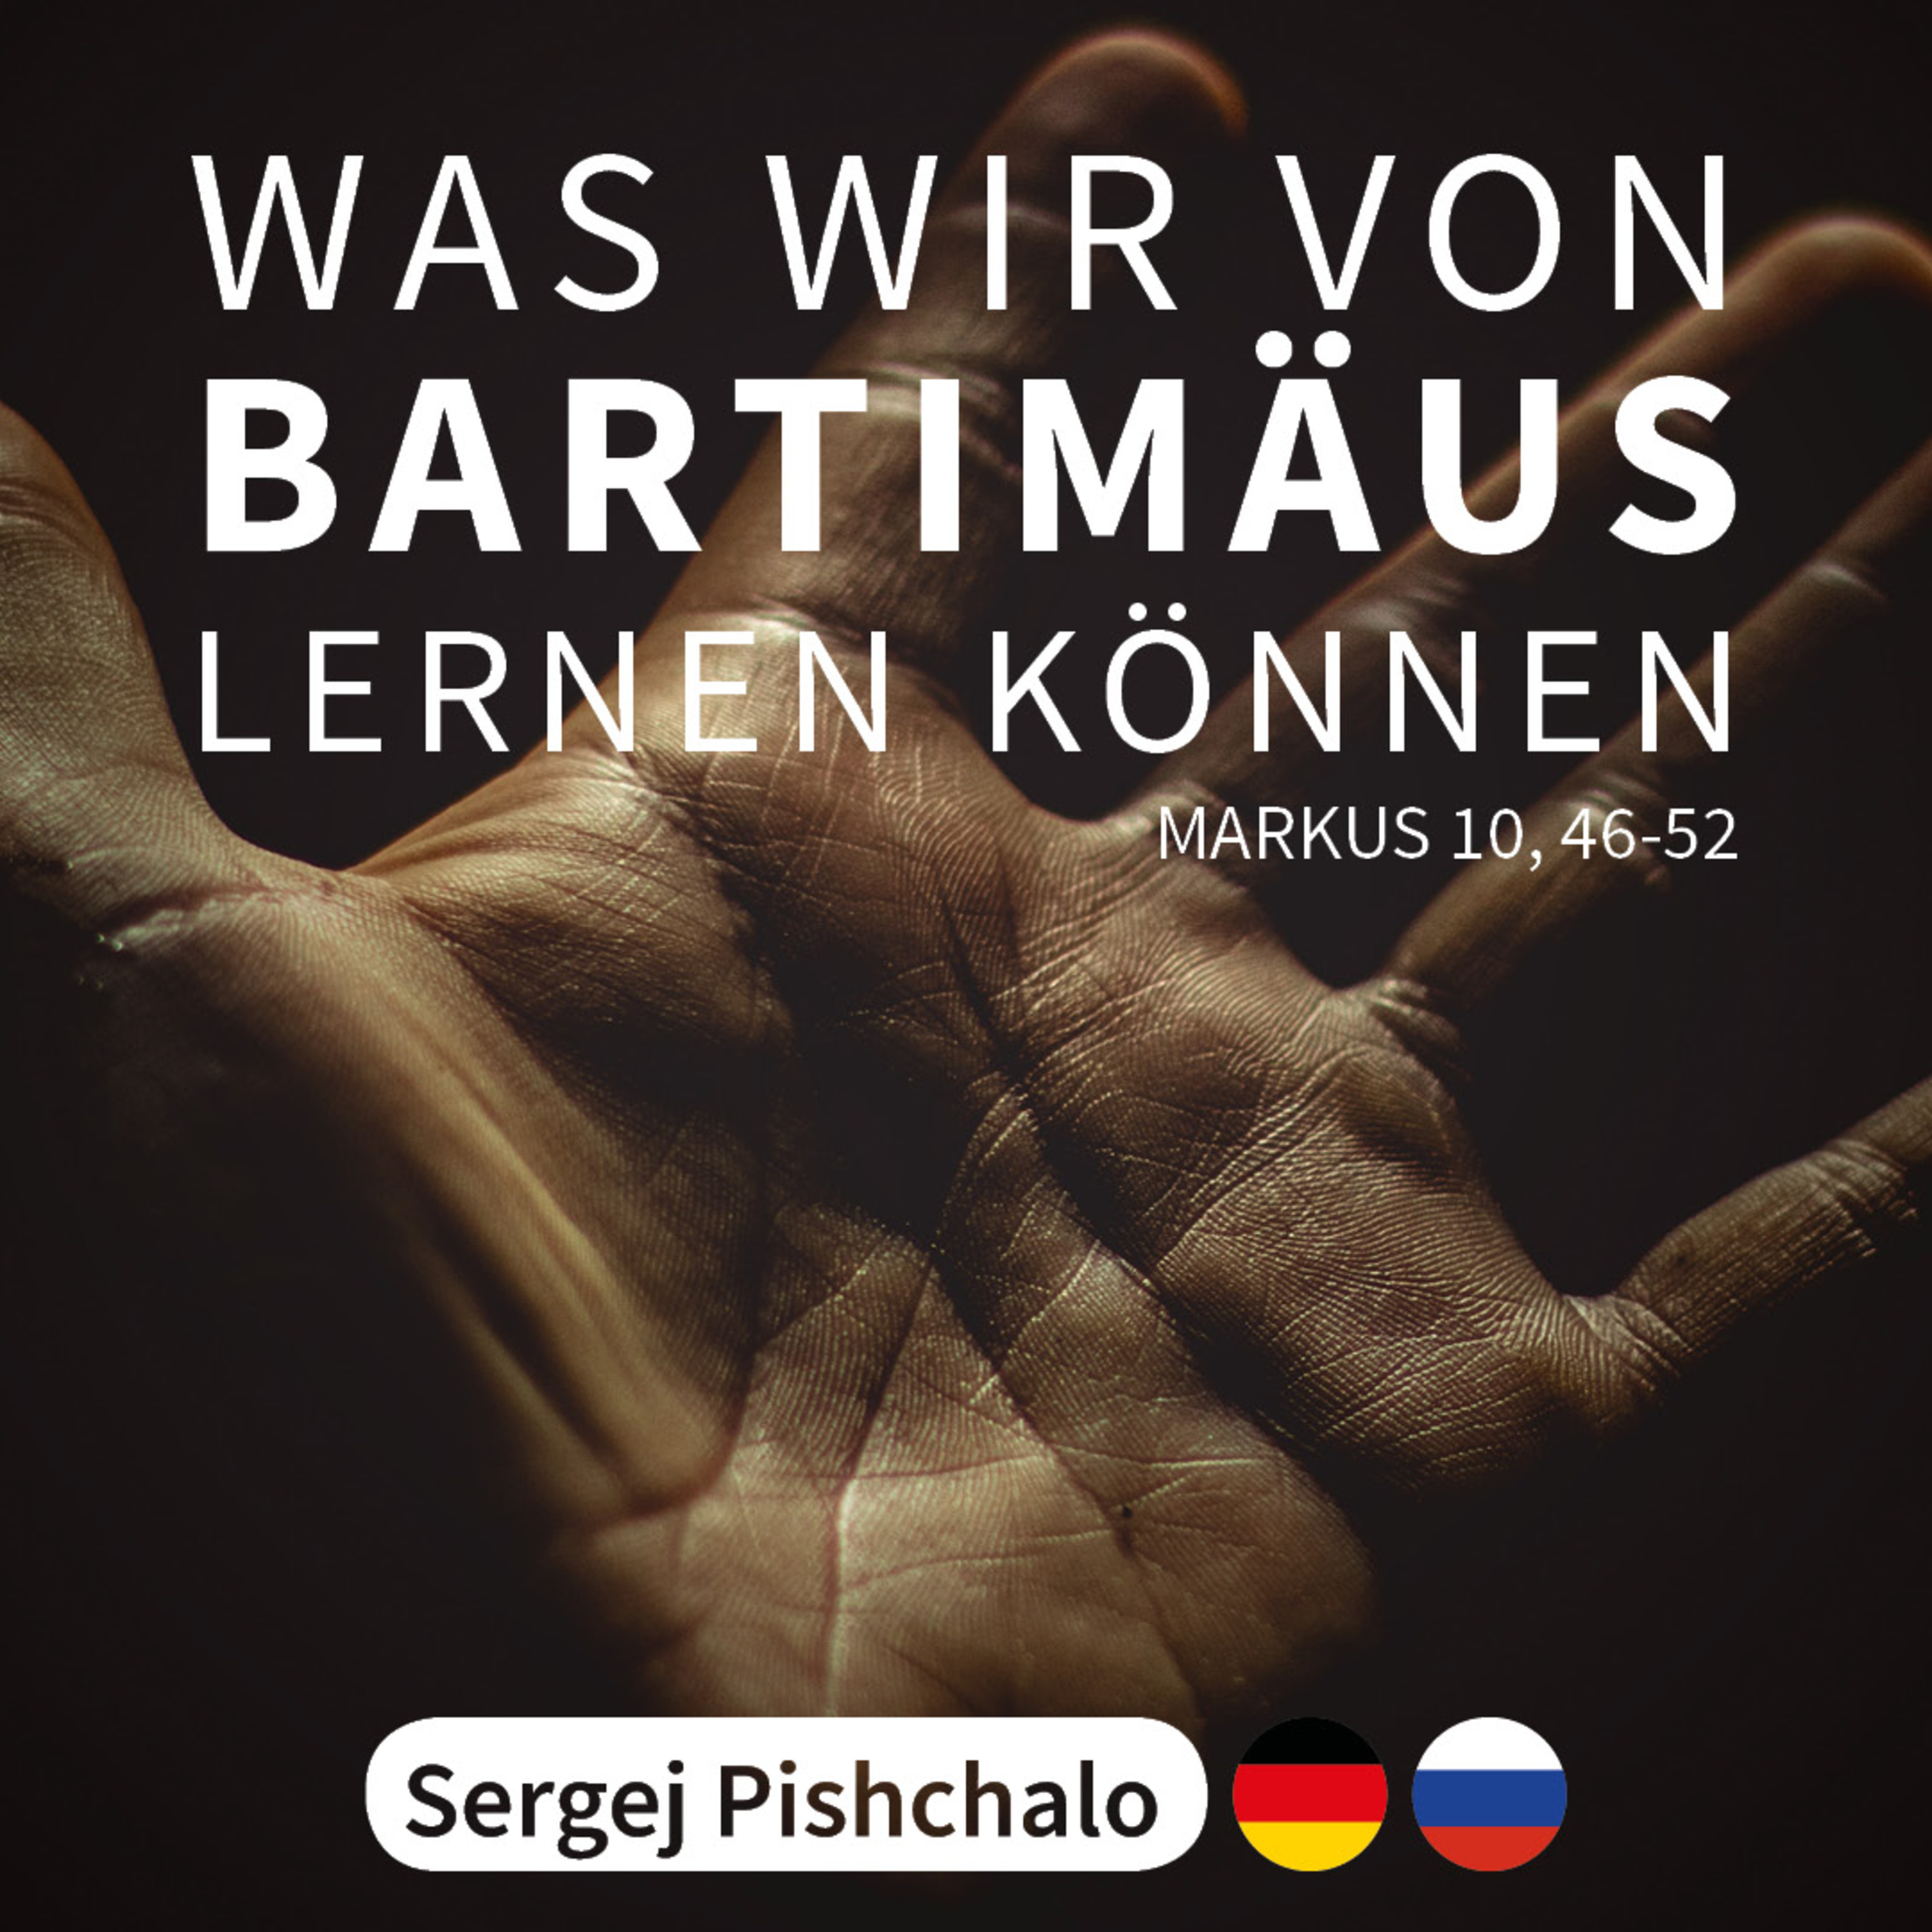 SERGEJ PISHCHALO - Was wir von Bartimäus lernen können [Markus 10, 46-52]  hero artwork